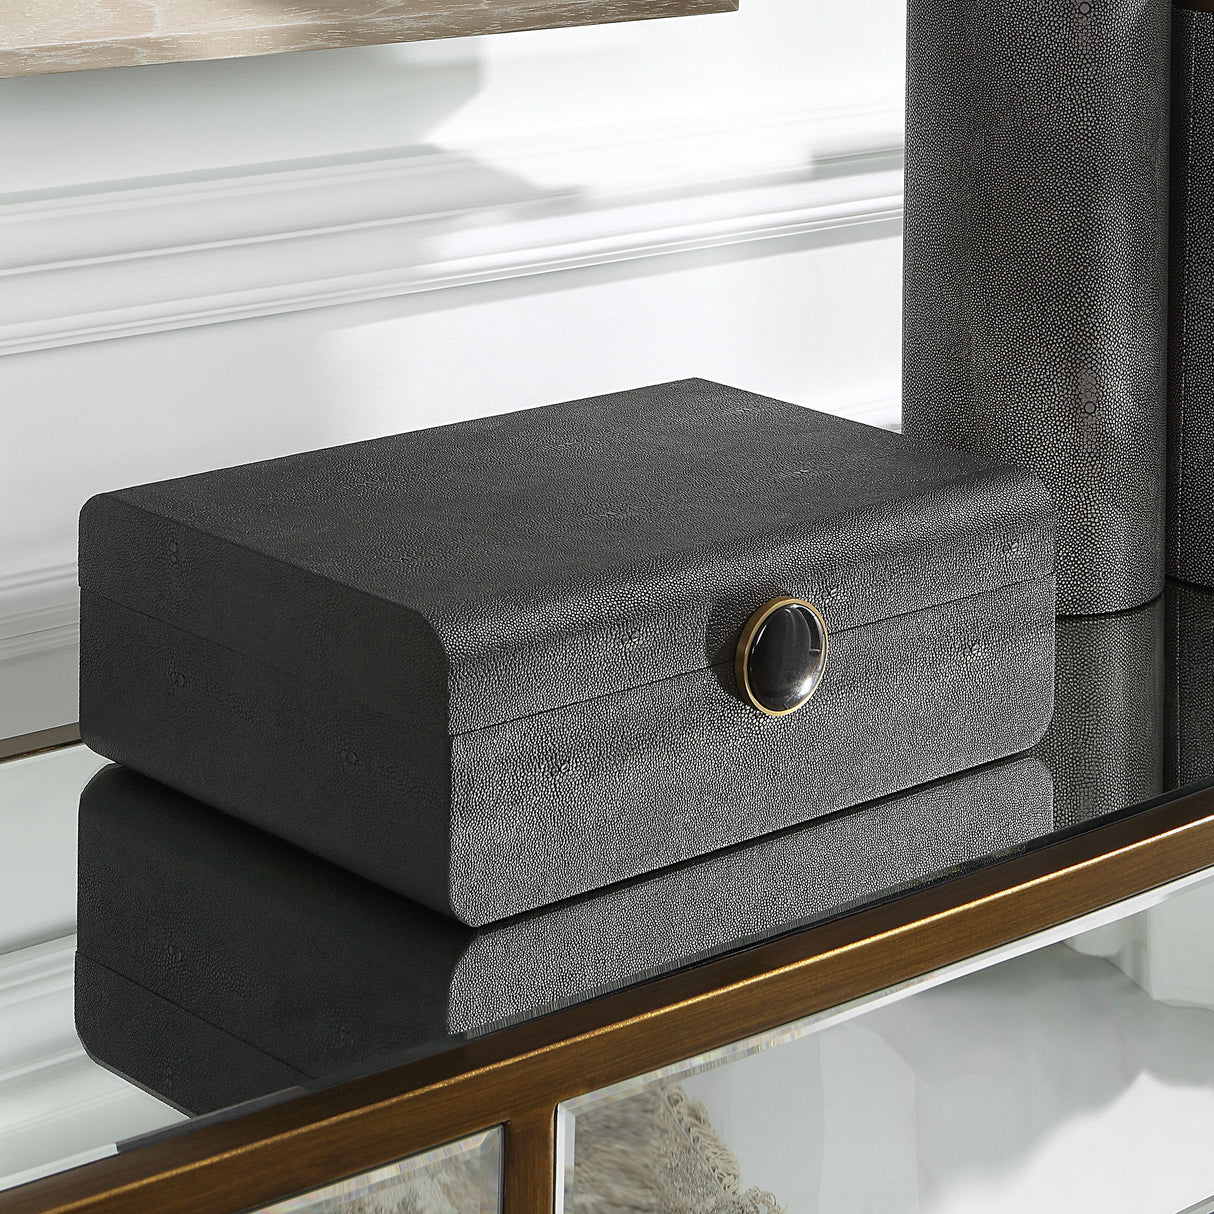 Lalique - Black Shagreen Box